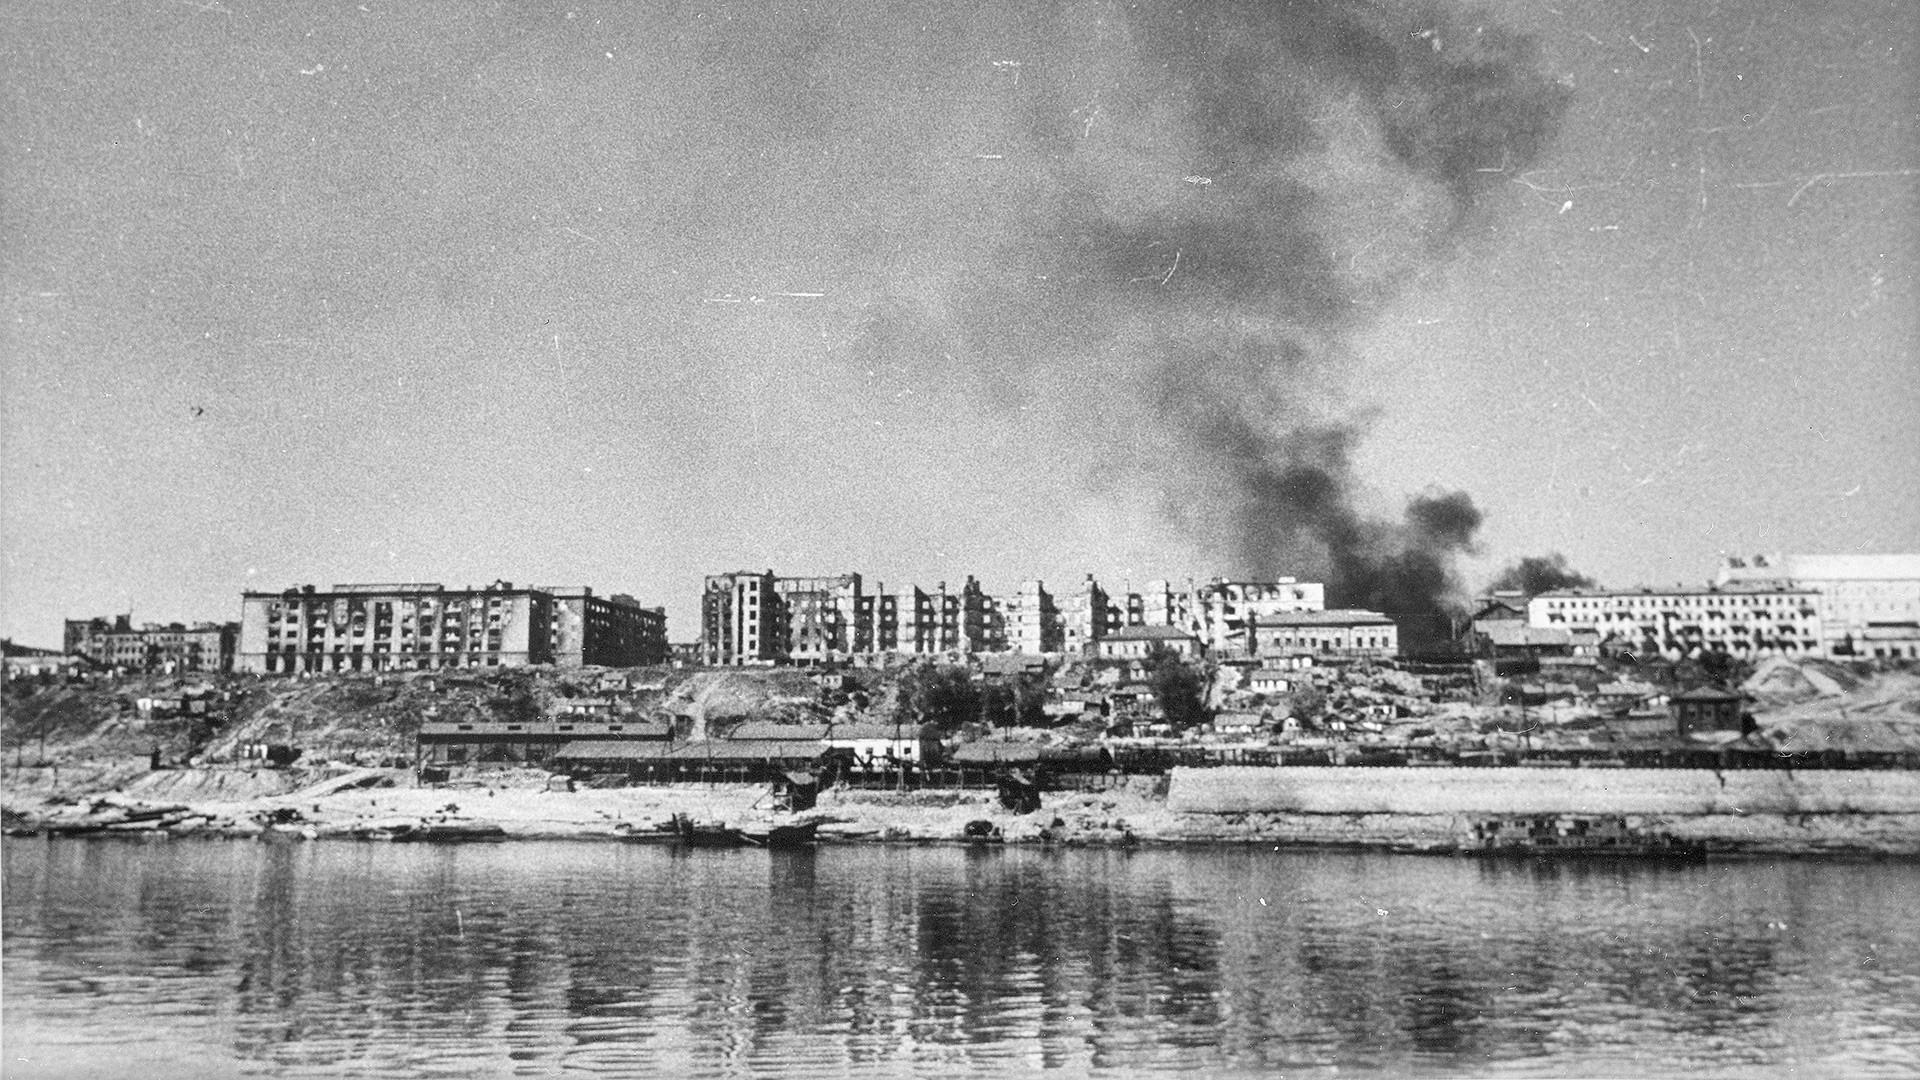 Vista del Volga y de Stalingrado (Volgogrado) destruido, 1942 